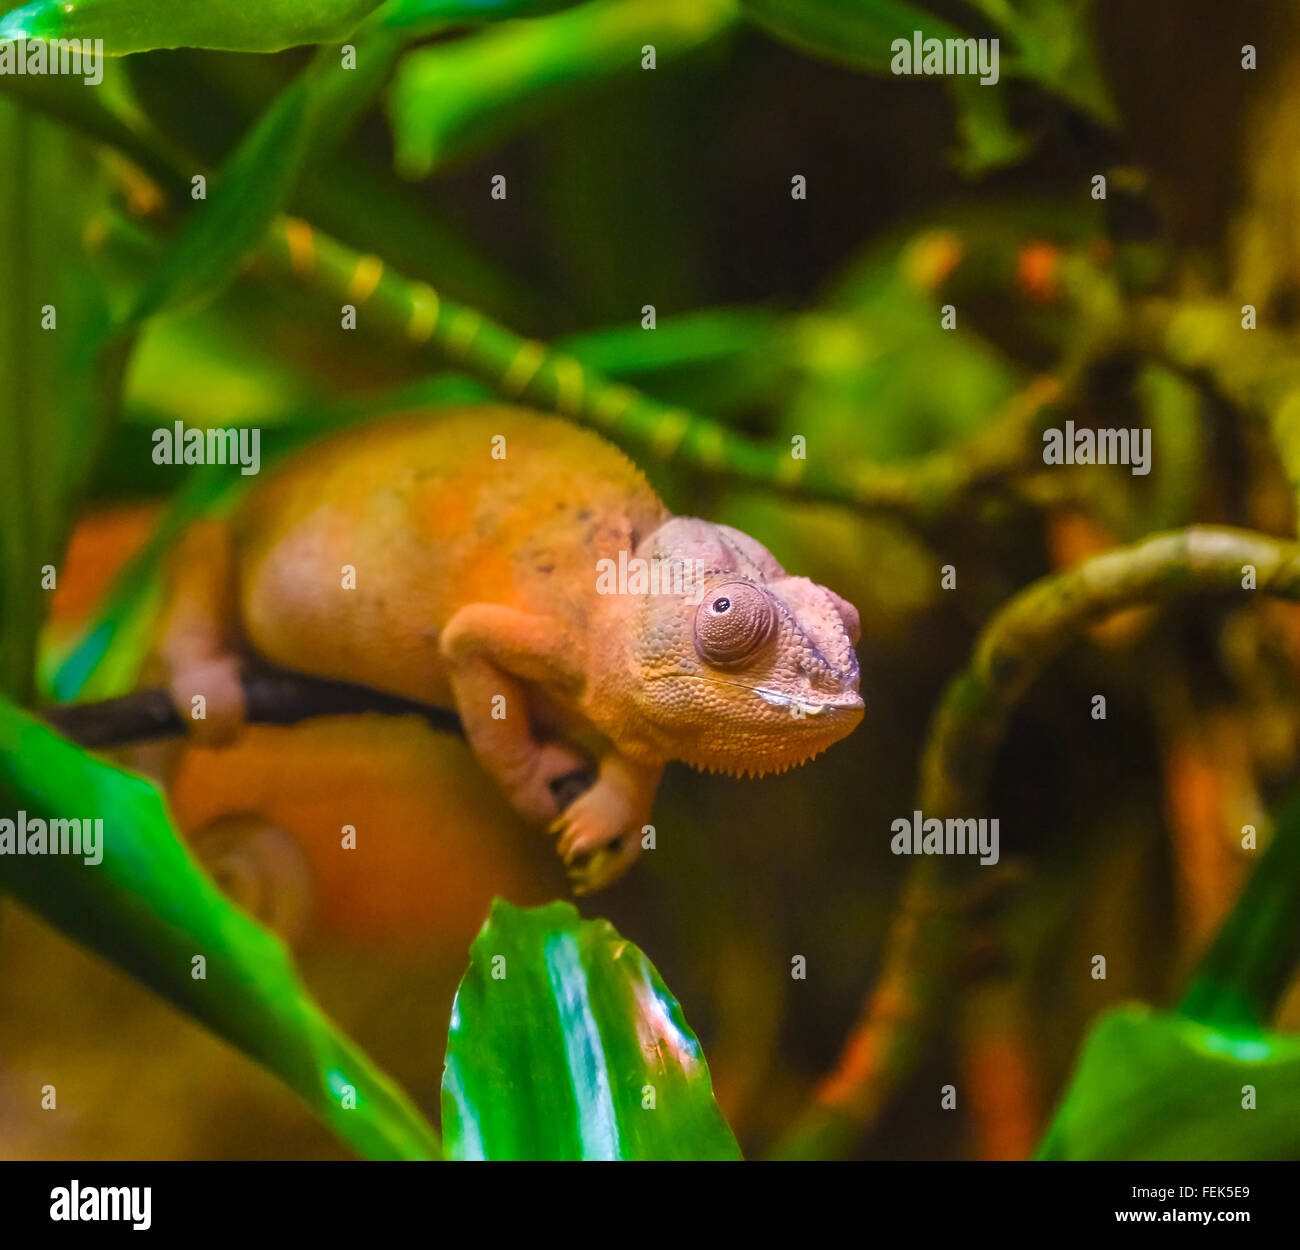 Orange-Chamäleon schaut aus den grünen Blättern in einem Gehäuse Regenwald zu simulieren Stockfoto